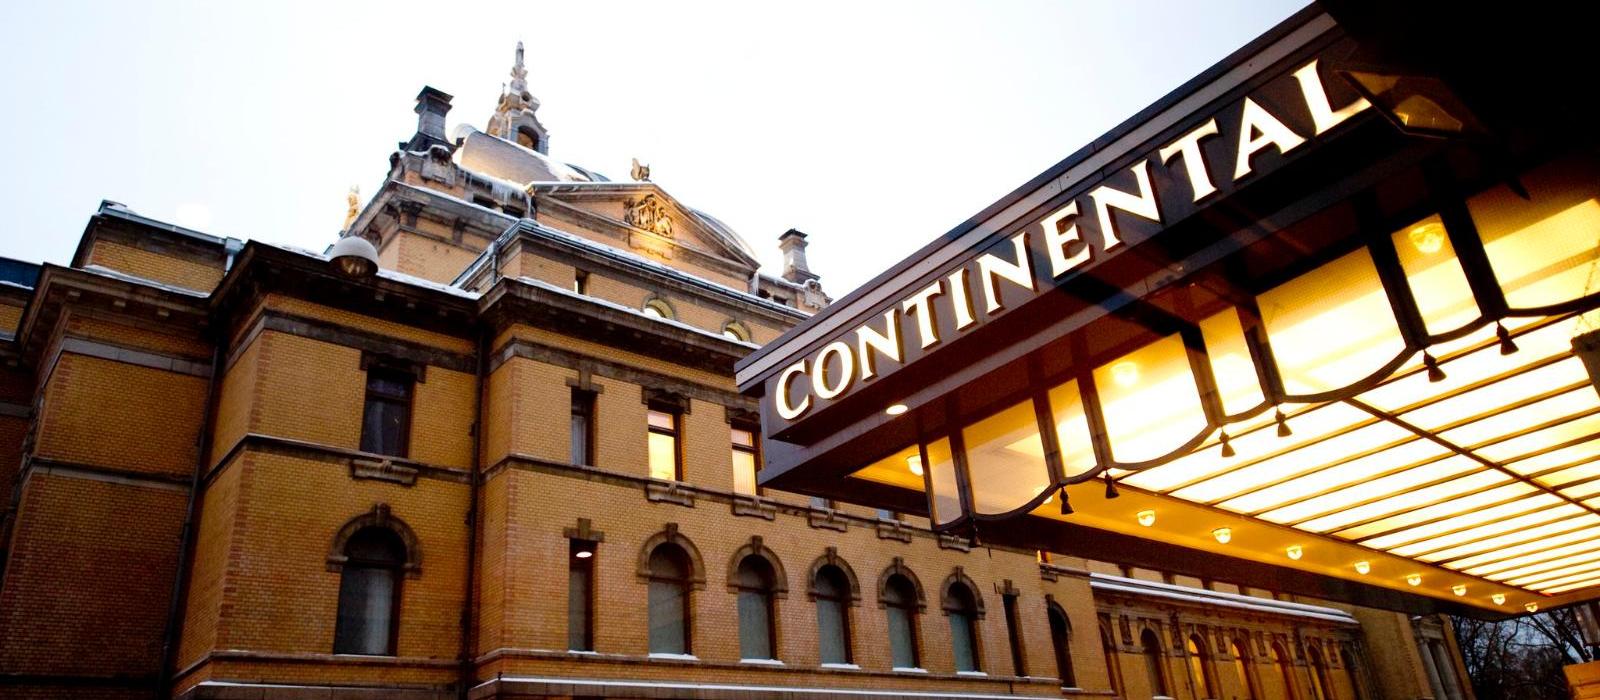 大陆酒店(Hotel Continental) 酒店外观图片  www.lhw.cn